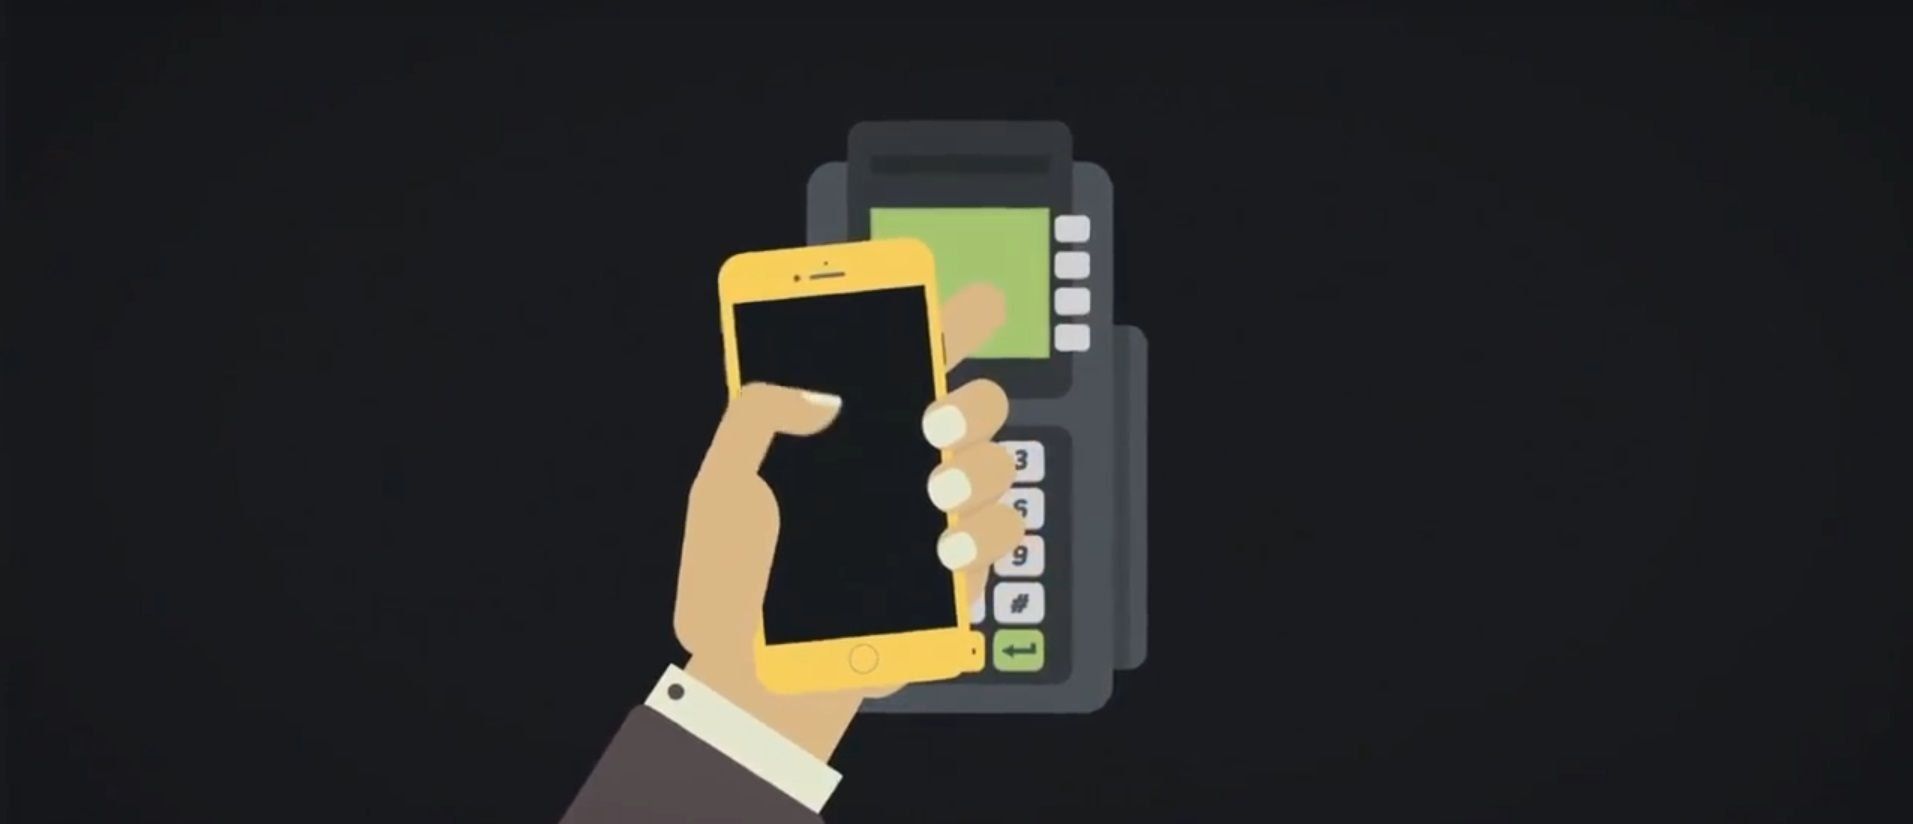 Er NFC-betaling sikker, og hvordan konfigureres den?